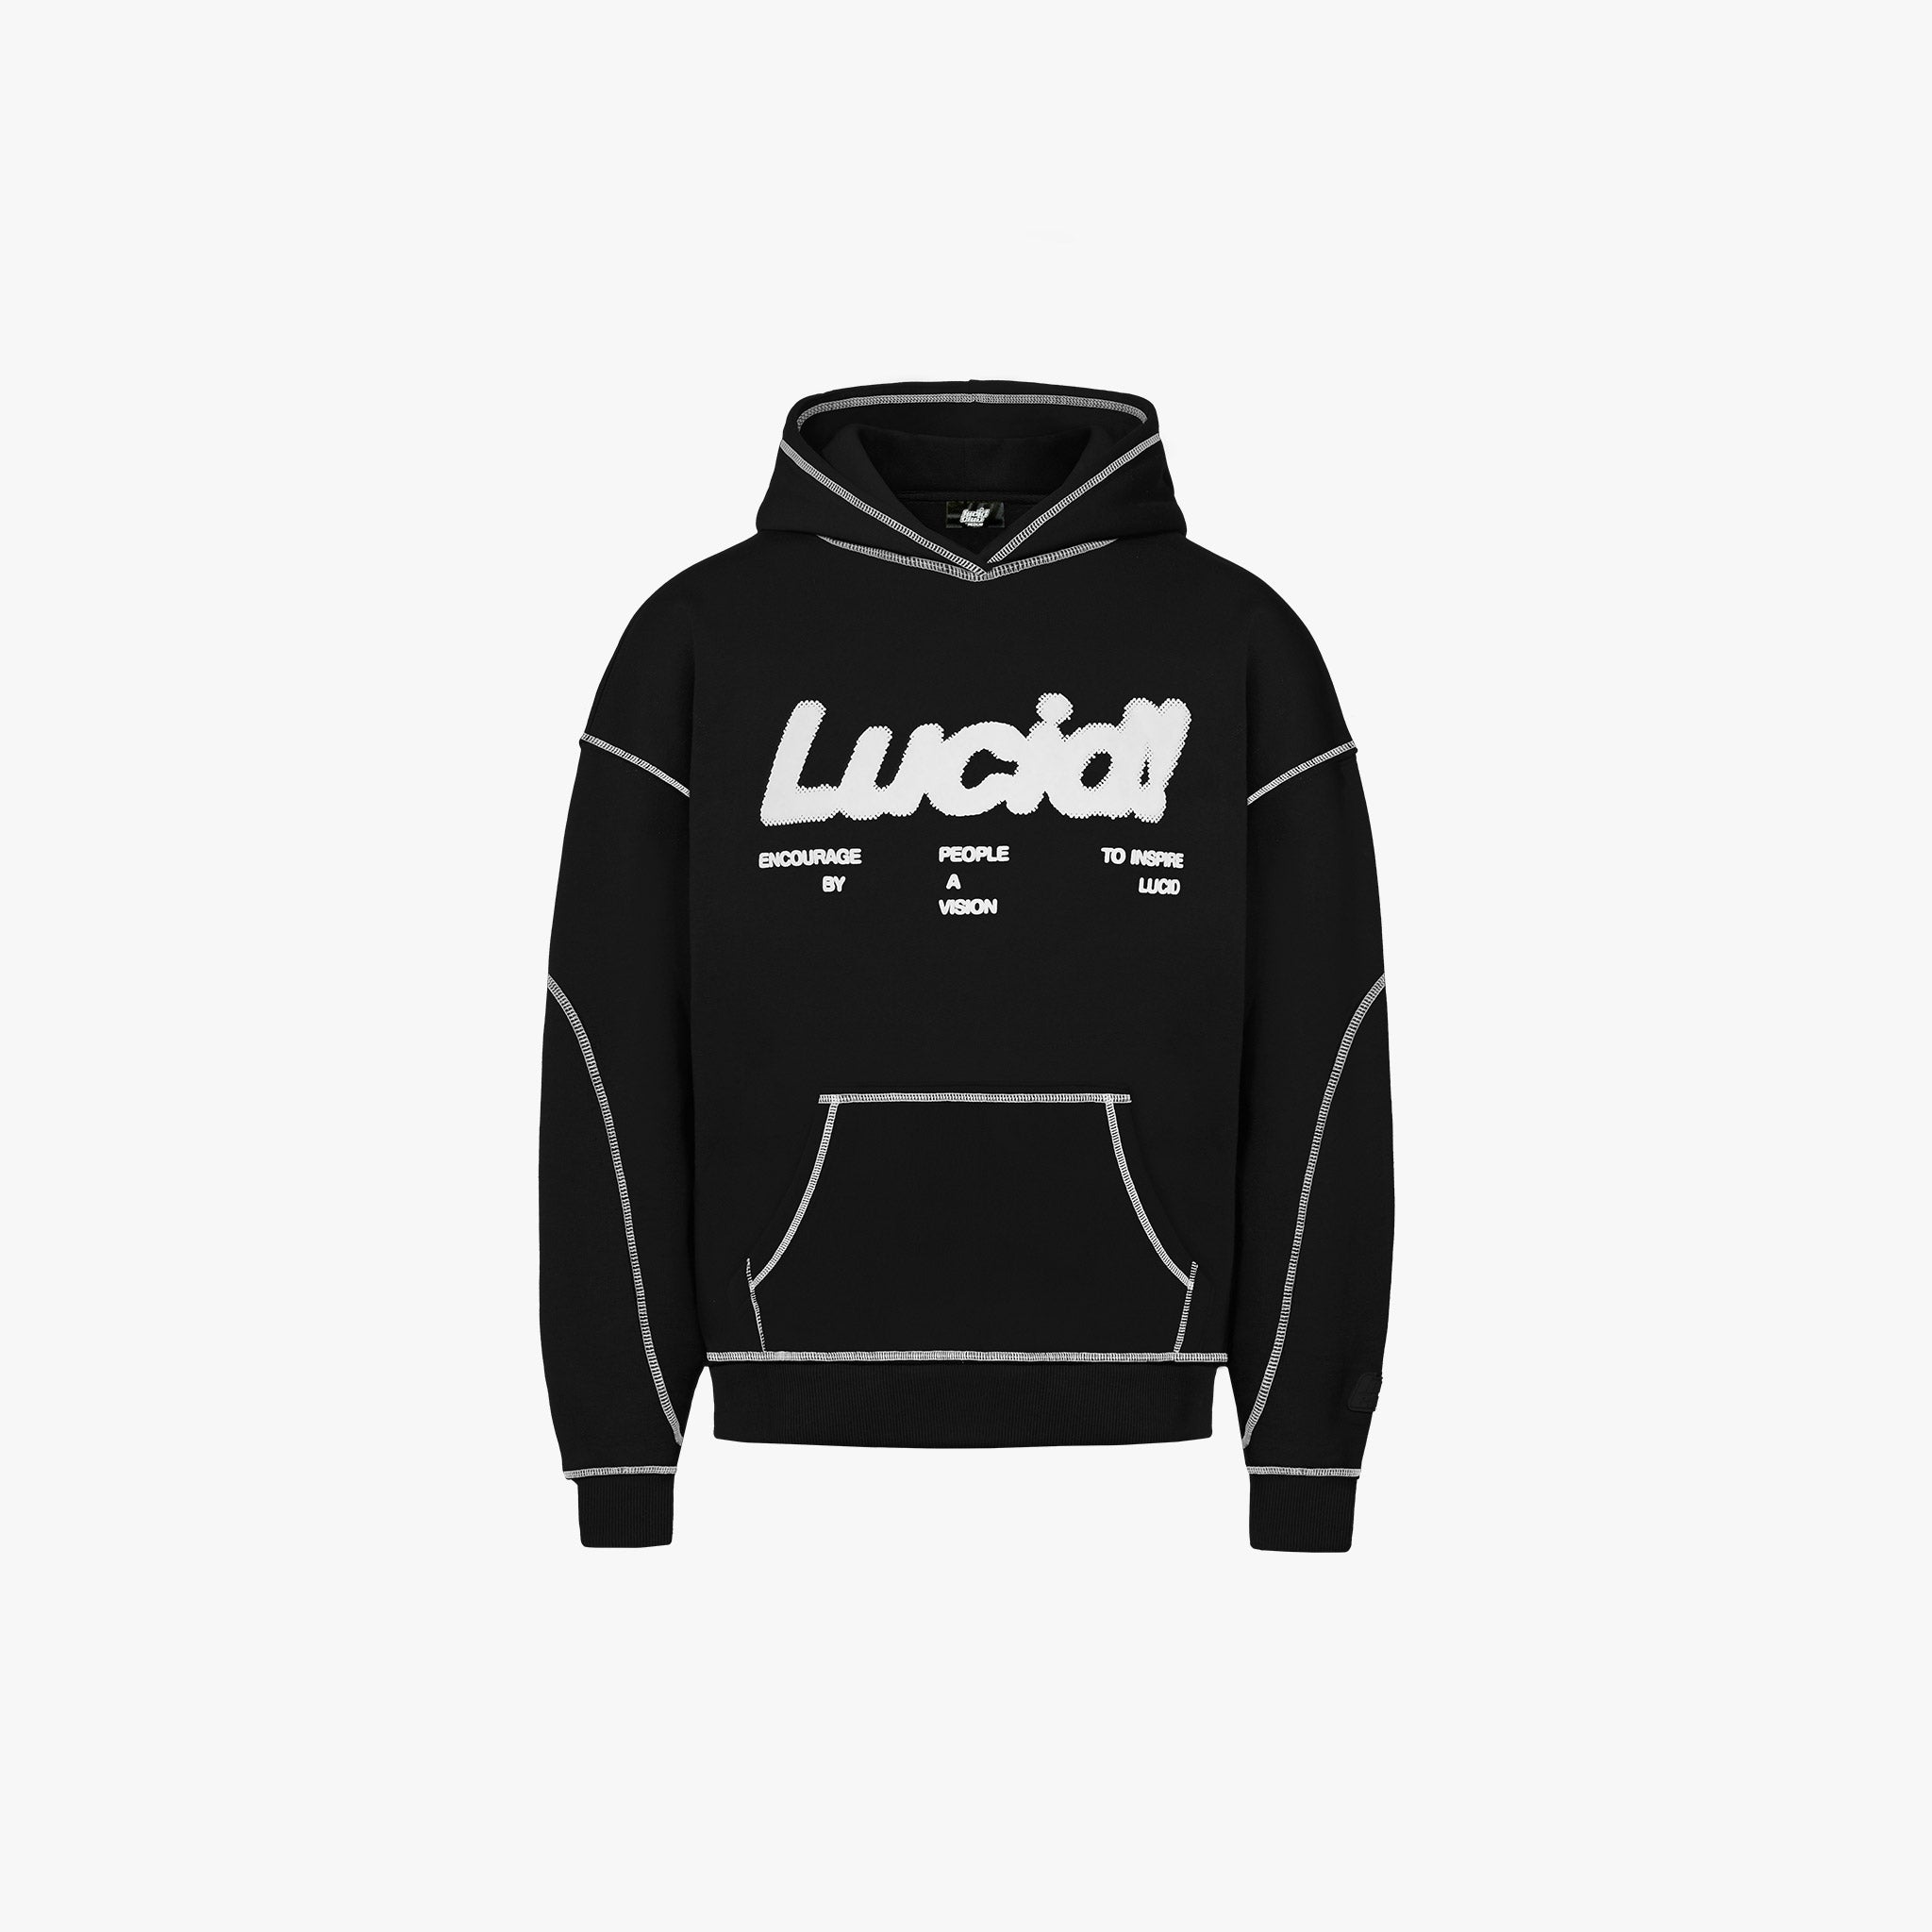 Lucid! Contrast hoodie